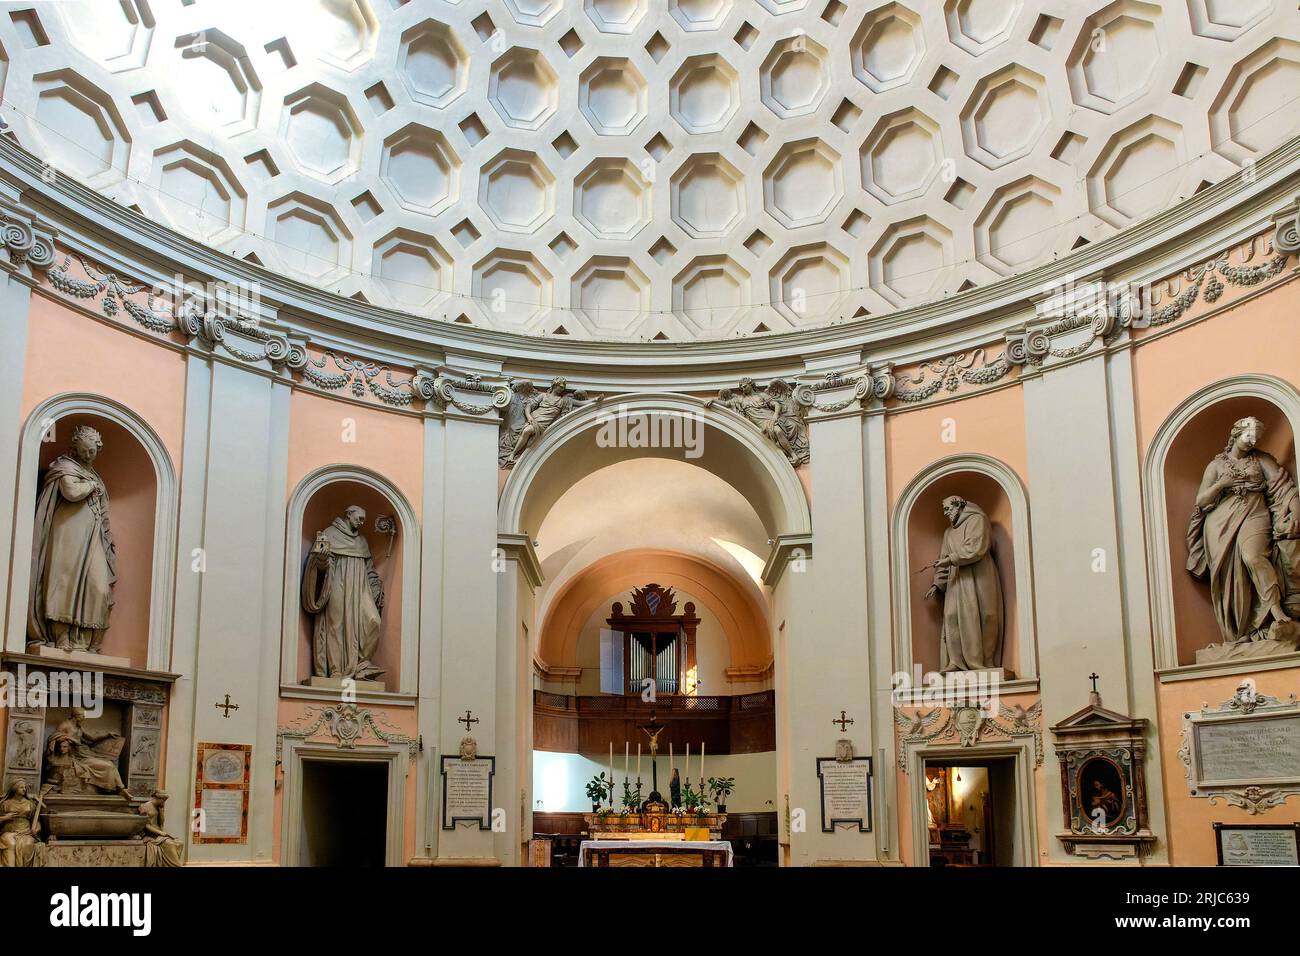 Intérieur de l'église de San Bernardo alle terme, Rome, Italie Banque D'Images